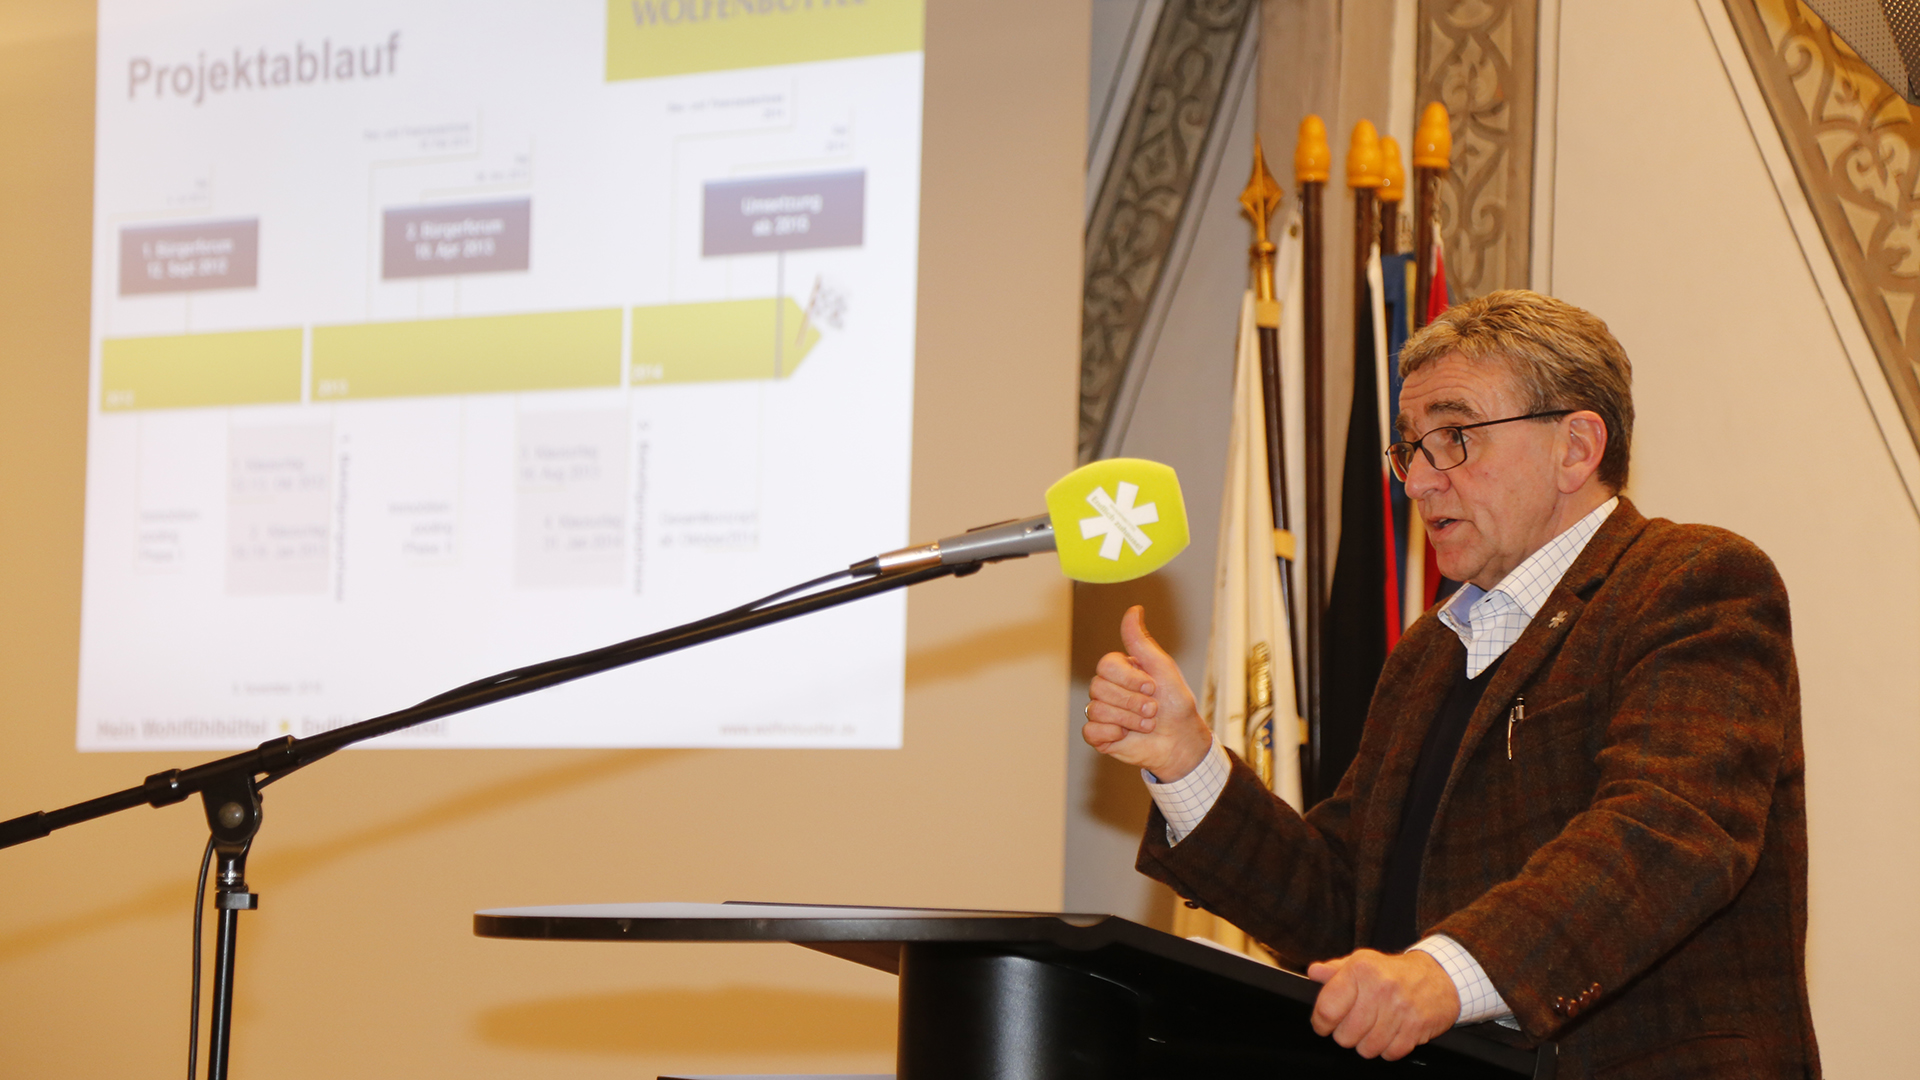 Thomas Pink spricht in ein grünes Mikrofon. Im Hintergrund eine Leinwand mit einer Grafik "Projektablauf".